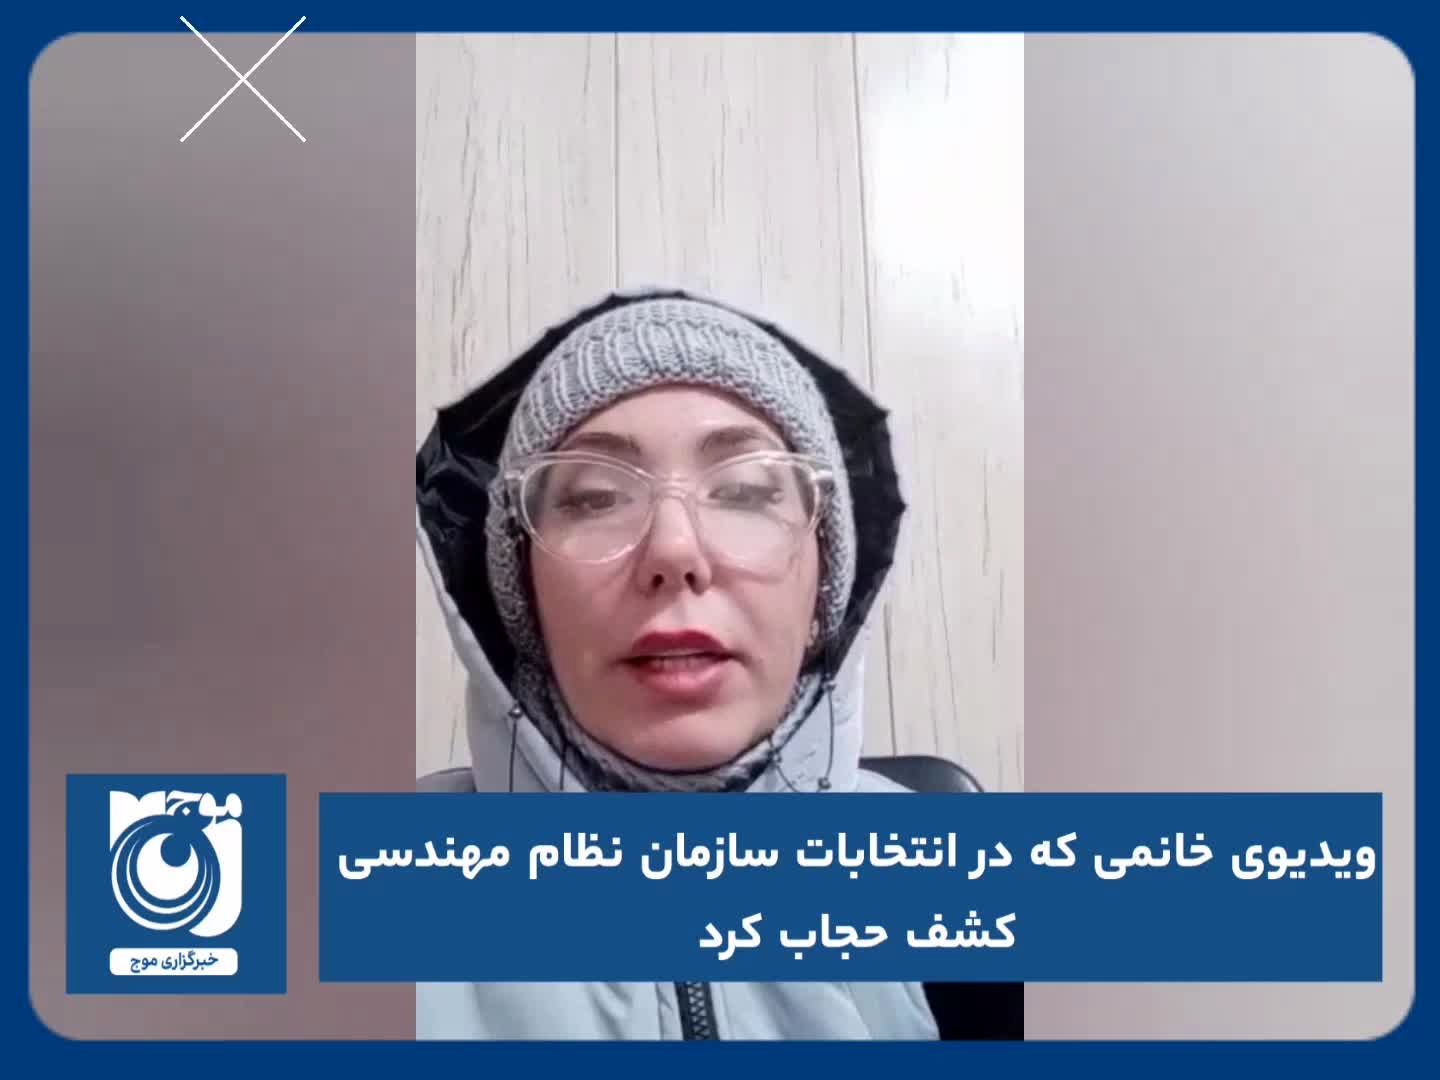 ویدیوی خانمی که در انتخابات سازمان نظام مهندسی کشف حجاب کرد